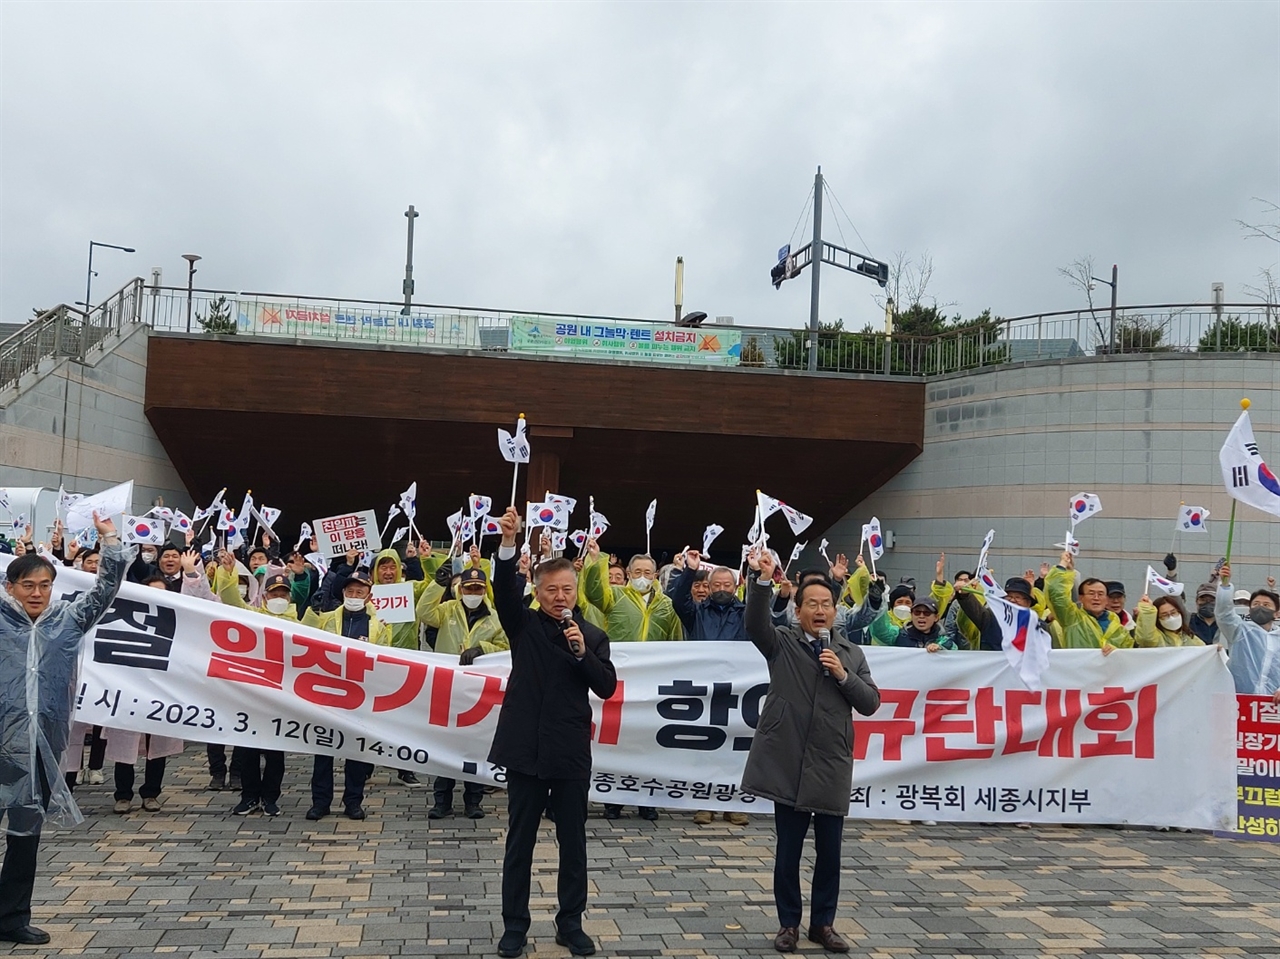 광복회 세종시지부(지부장 이공호)는 12일 오후 2시 세종호수공원에서 3.1절 일장기 게시 항의 규탄대회를 개최하고 있다.